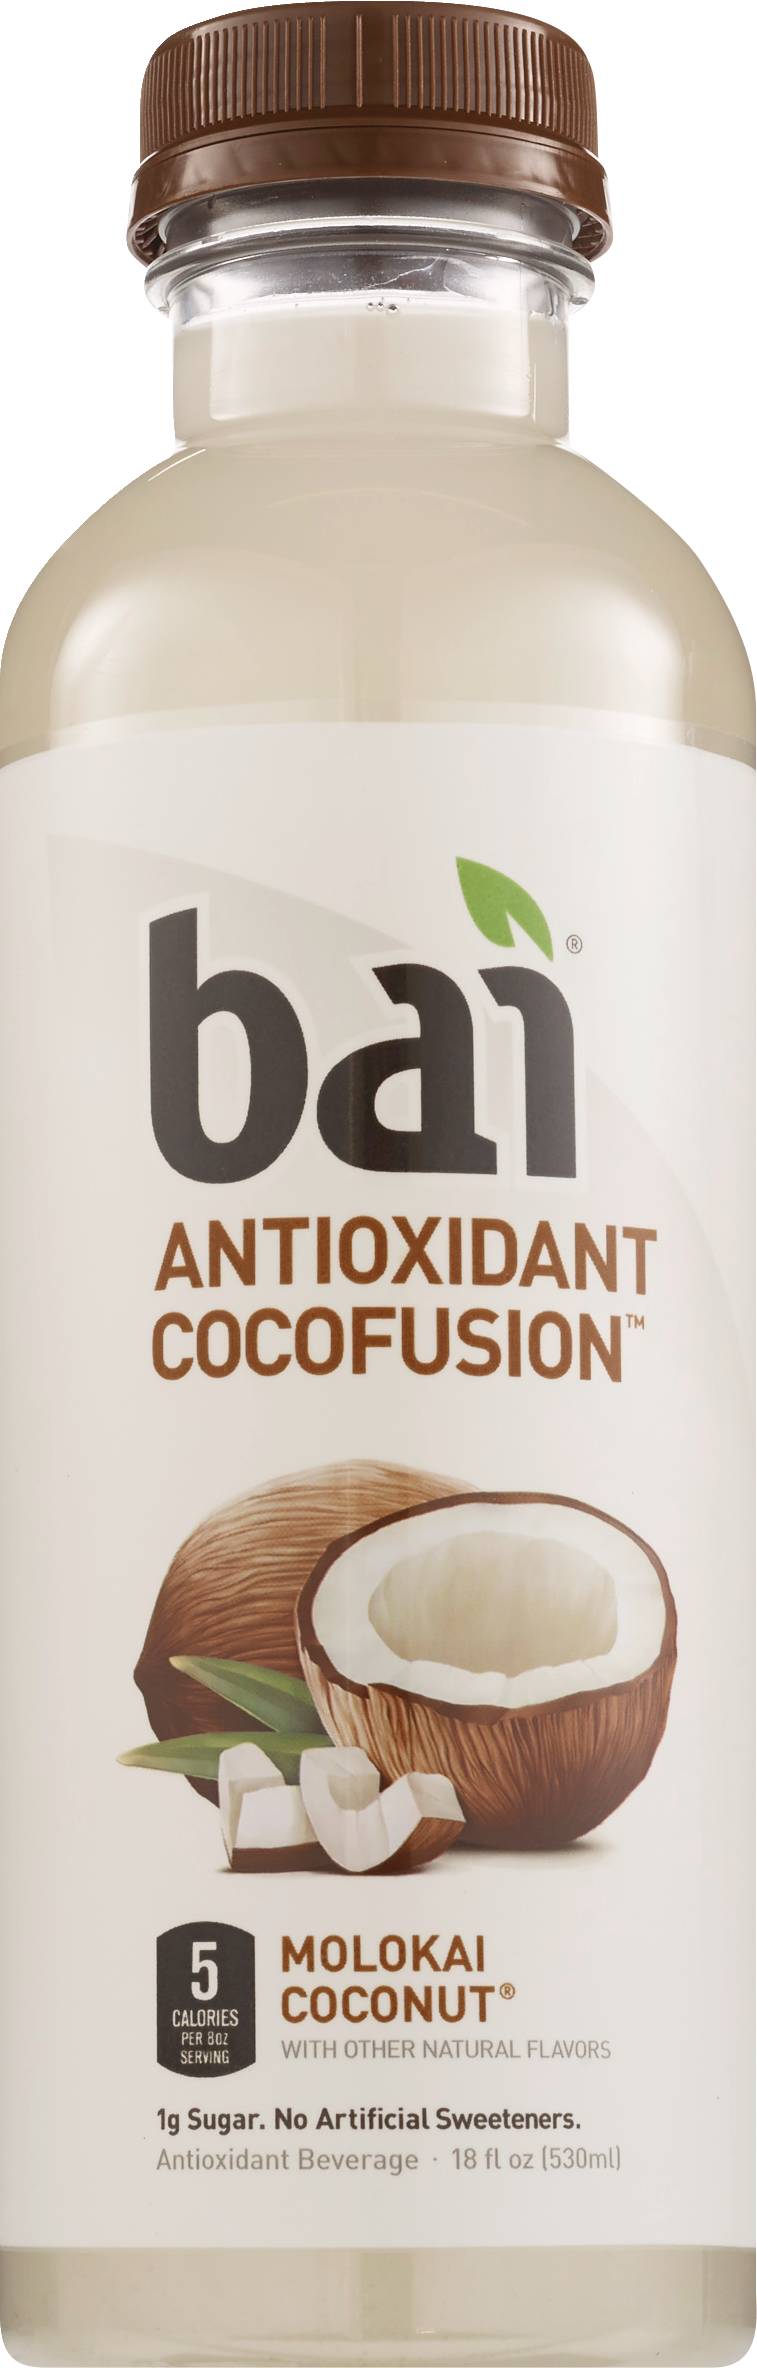 Bai Antioxidant Cocofusion Molokai Coconut Water, 18 OZ